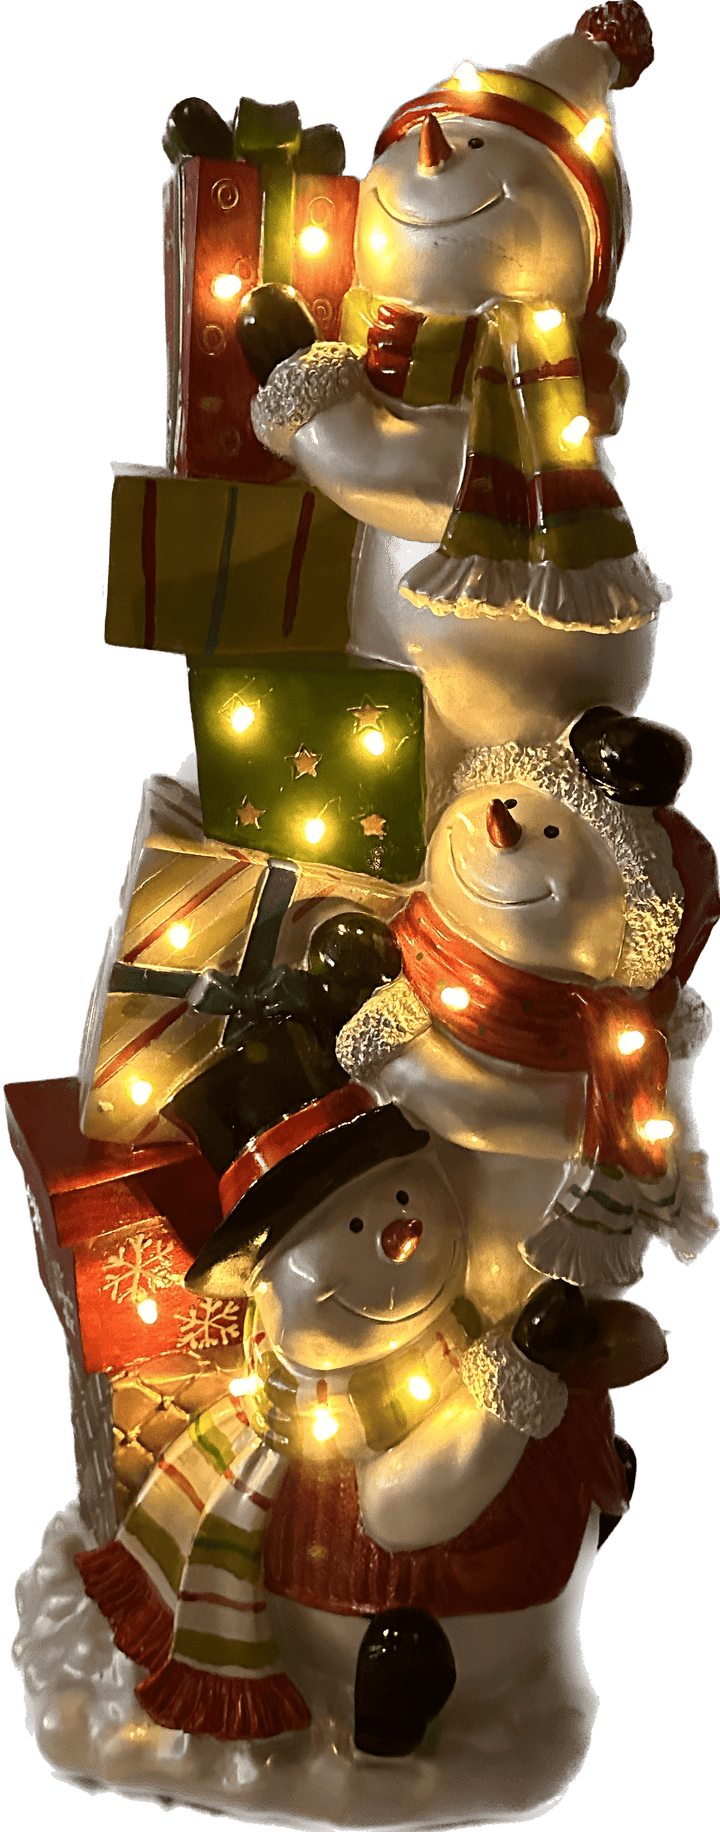 Kerstdecoratie De Smedt Verlichte Toren met Sneeuwman